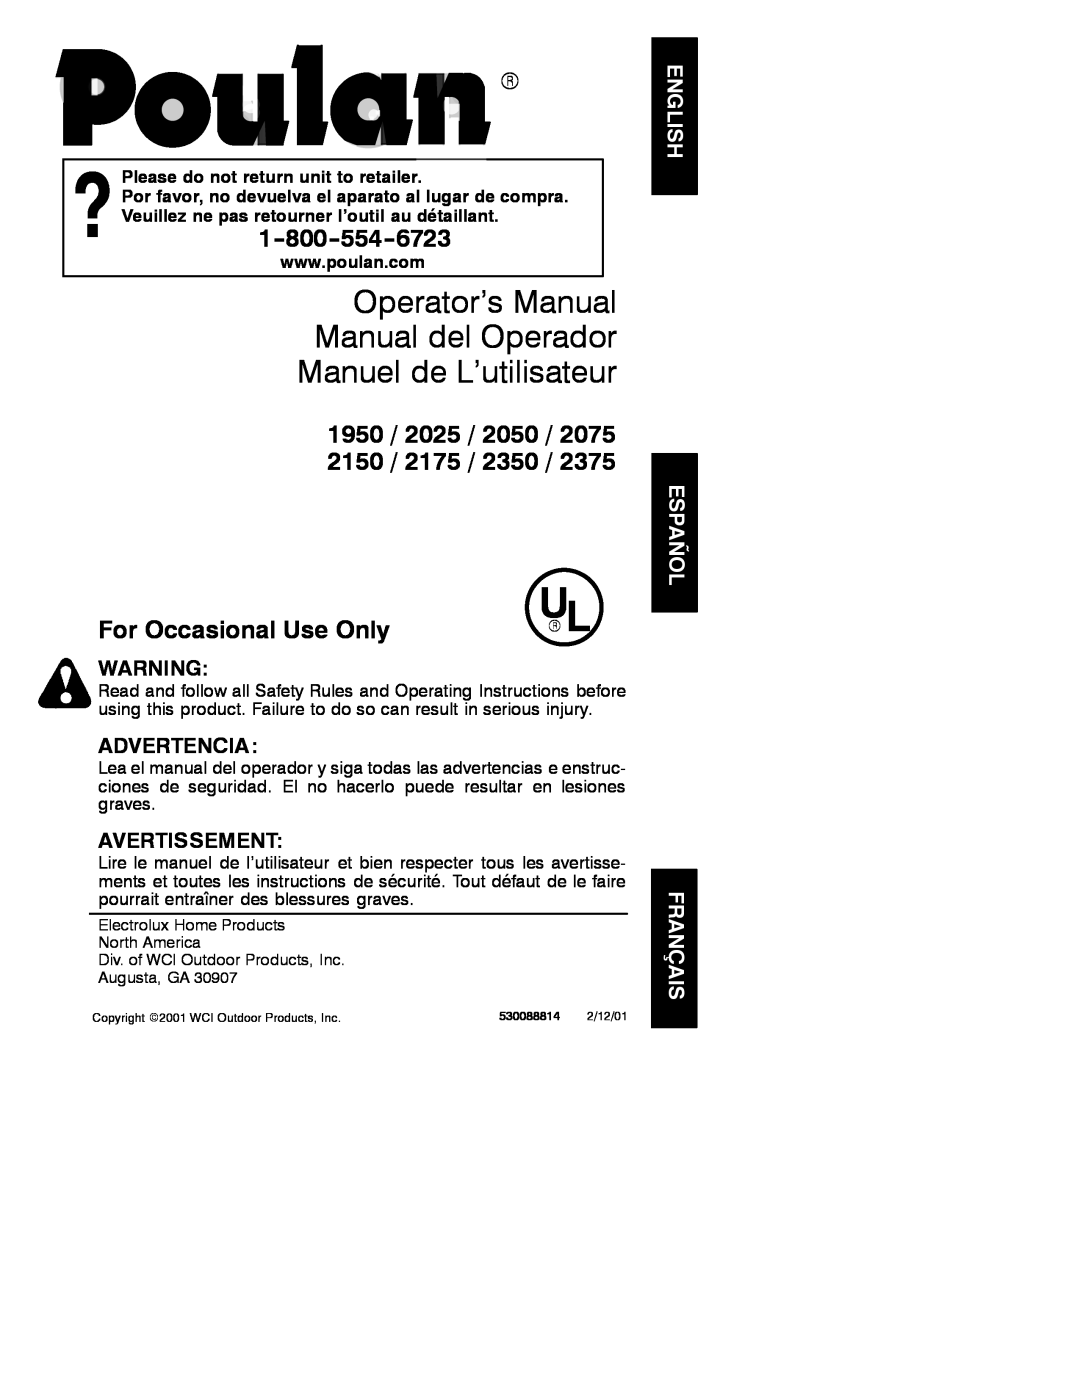 Poulan 530088814 manual Operator’s Manual Manual del Operador Manuel de L’utilisateur, 1950 / 2025 / 2050 2150 / 2175 